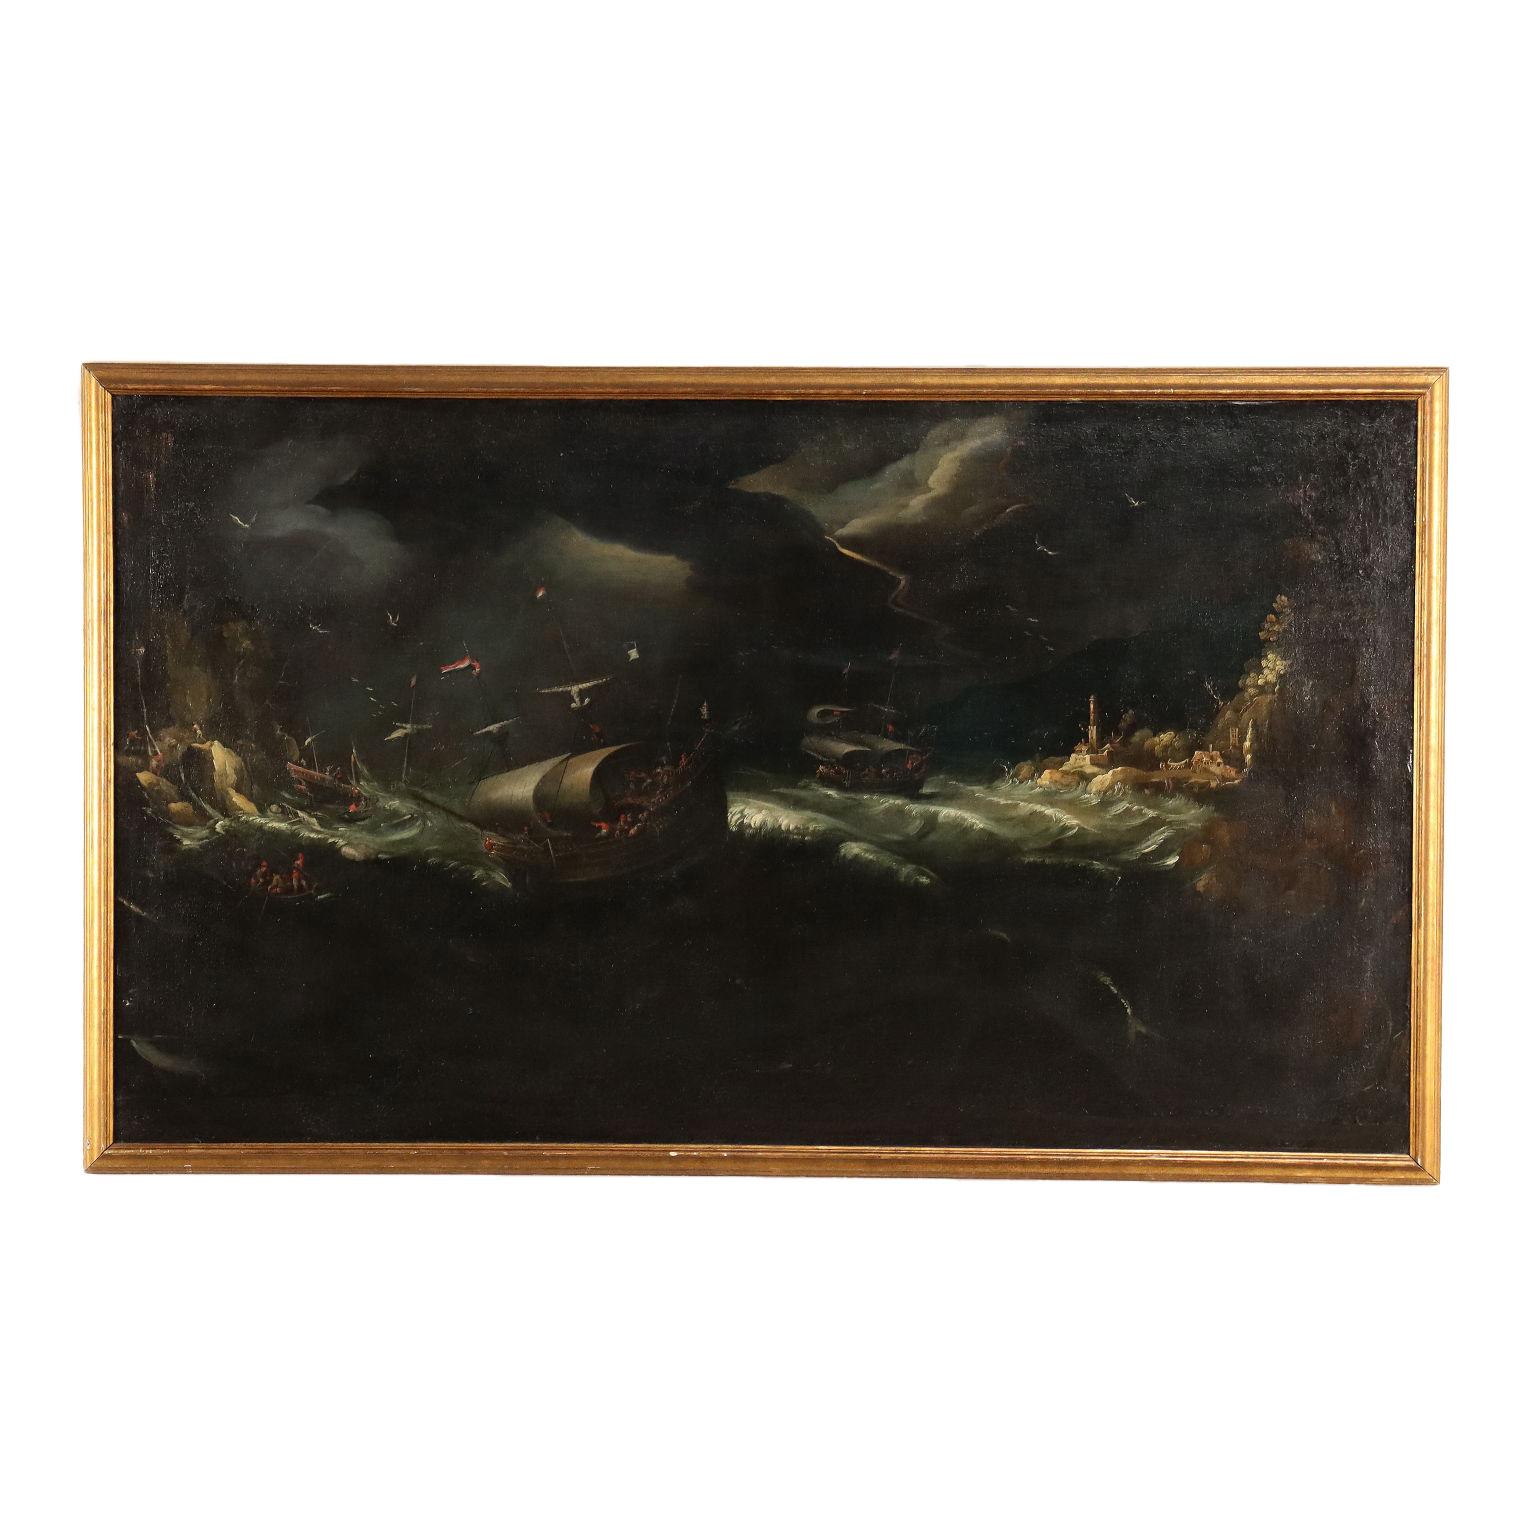 Landscape Painting Unknown - Mer agitée Huile sur toile École flamande XVIIe siècle